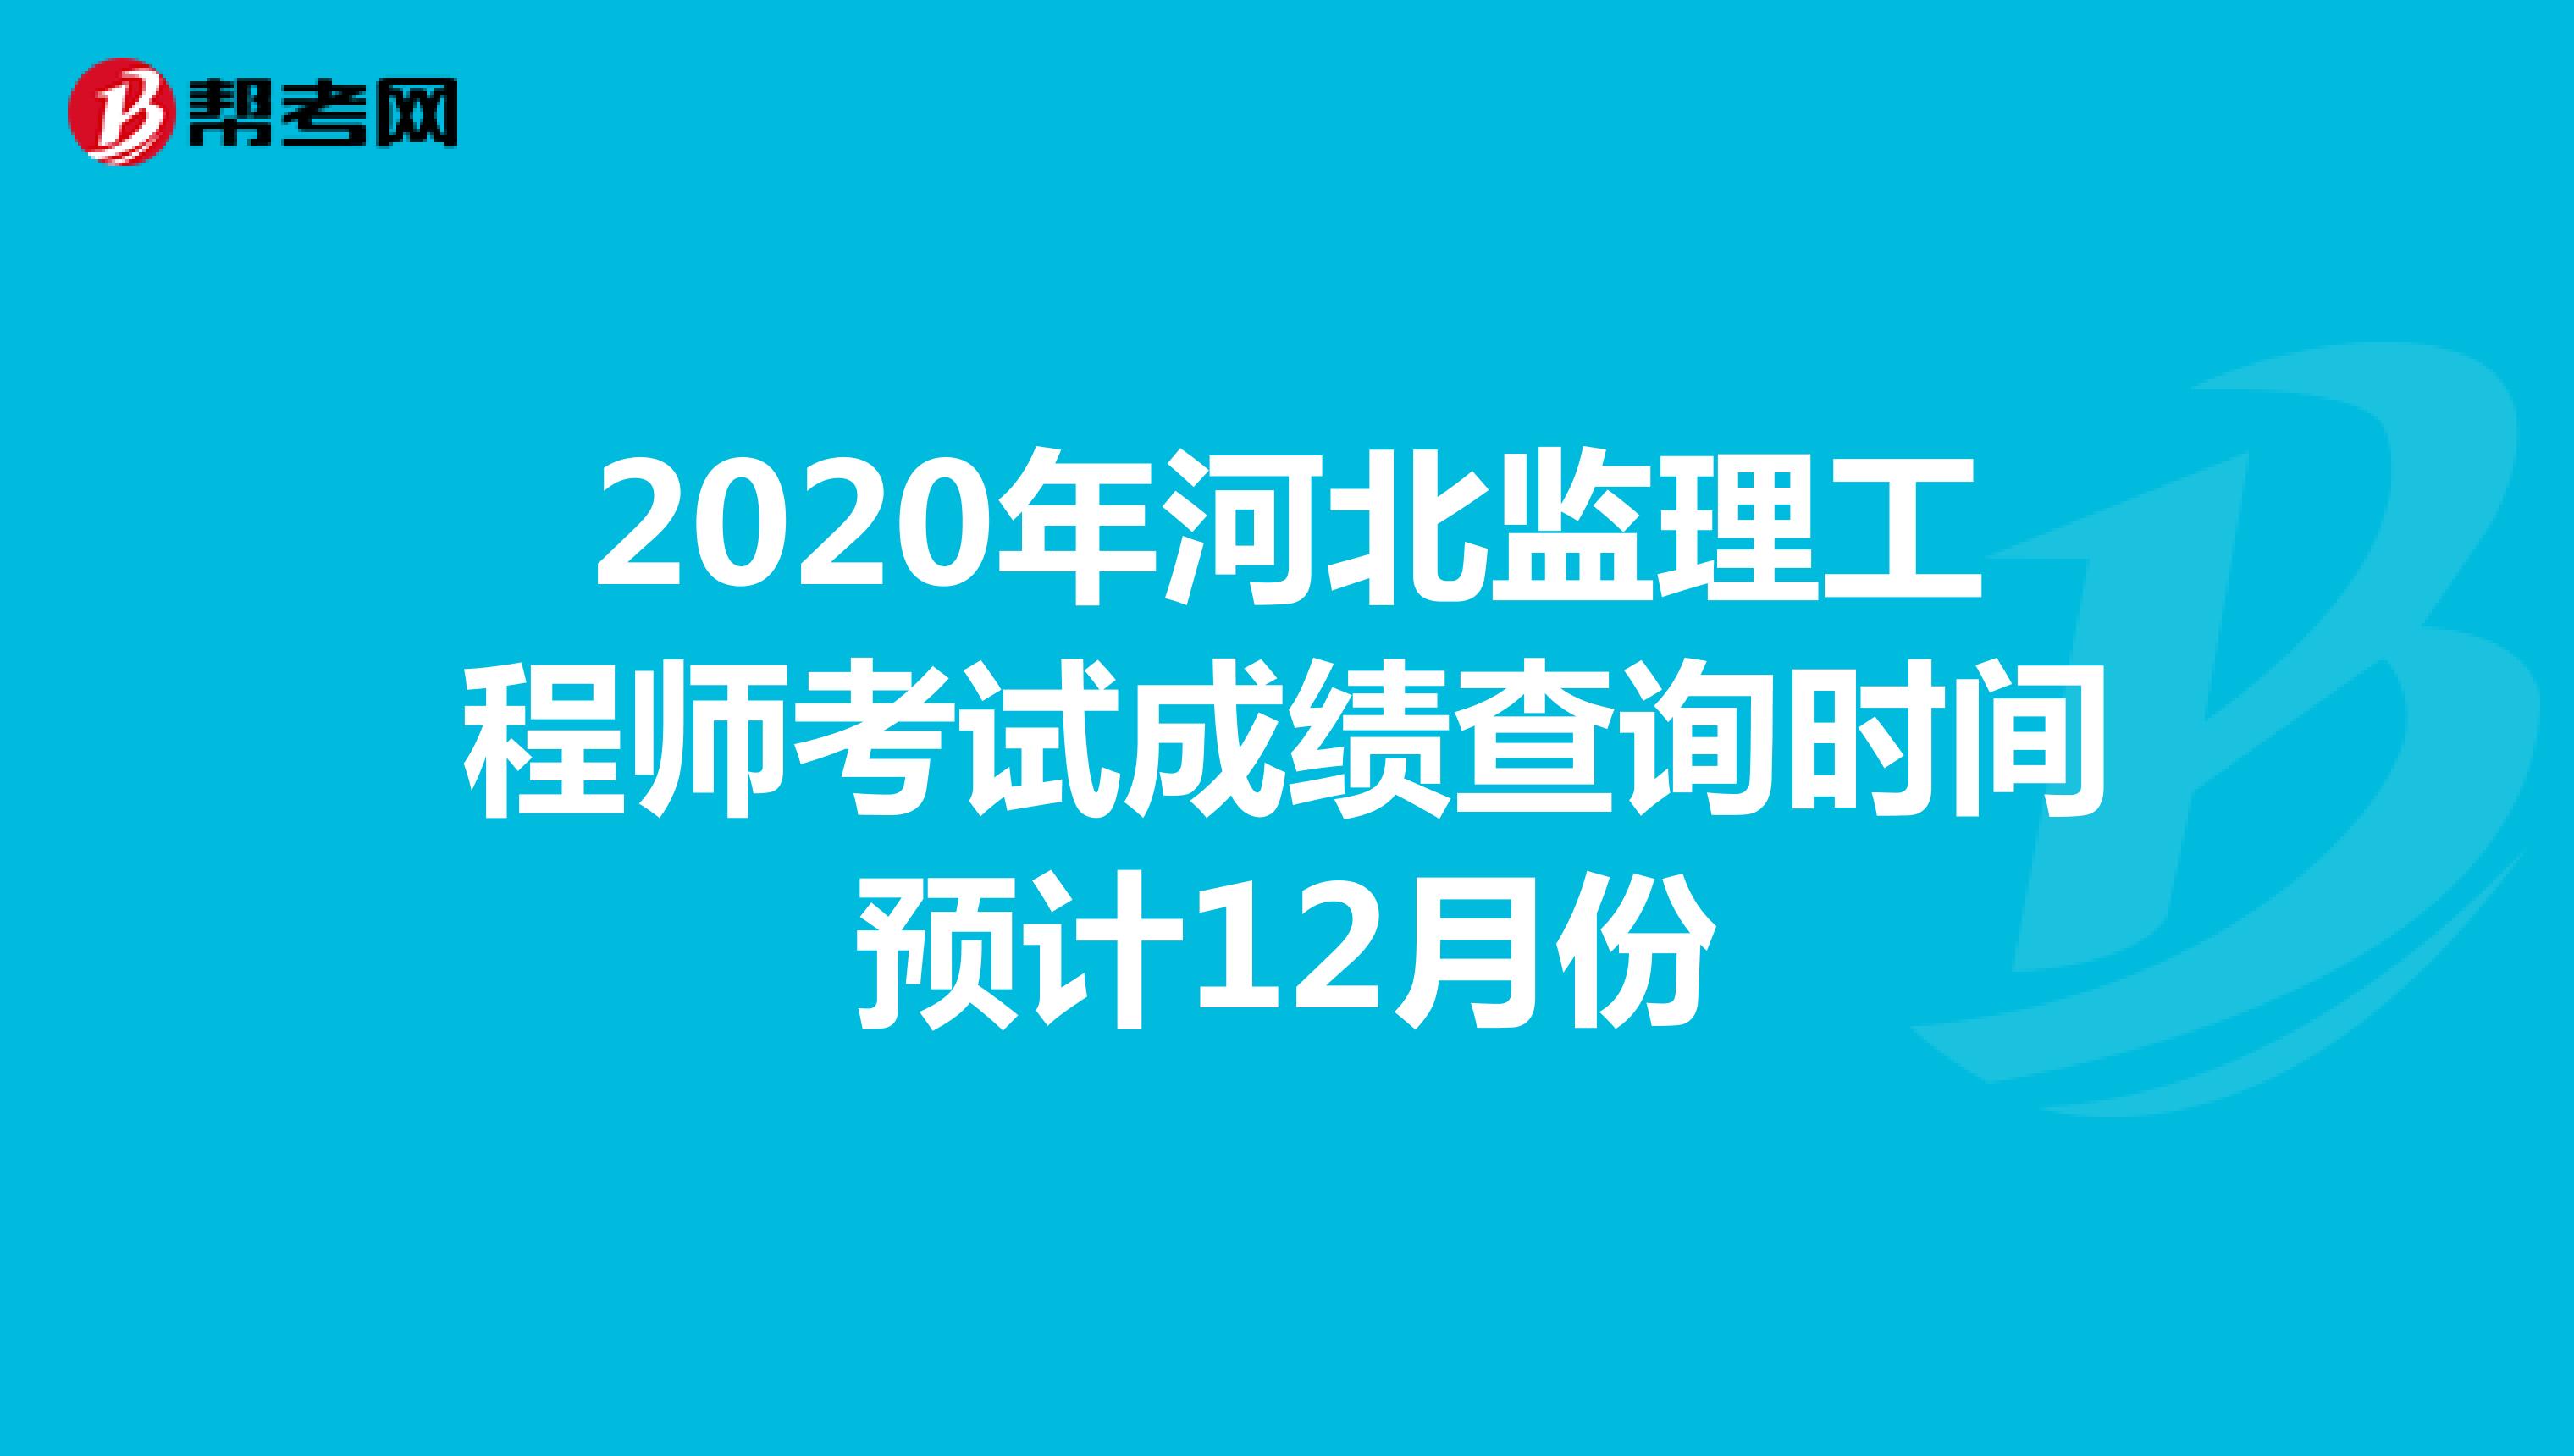 2020年河北监理工程师考试成绩查询时间预计12月份